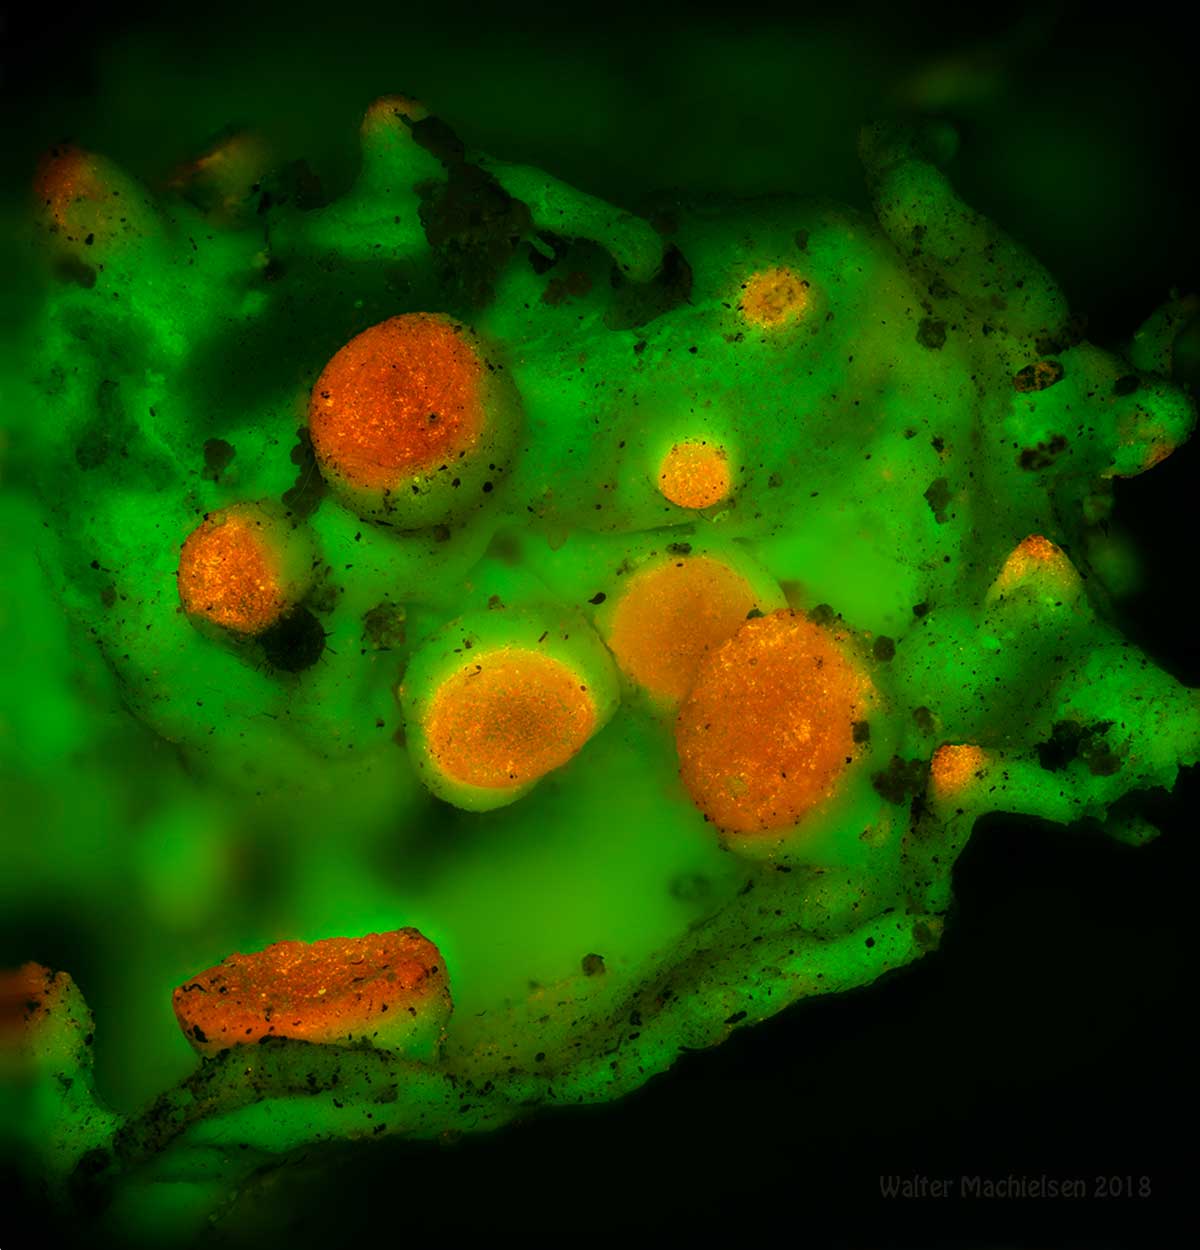 Lichen by fluorescence microscopy by Walter Machielsen ©